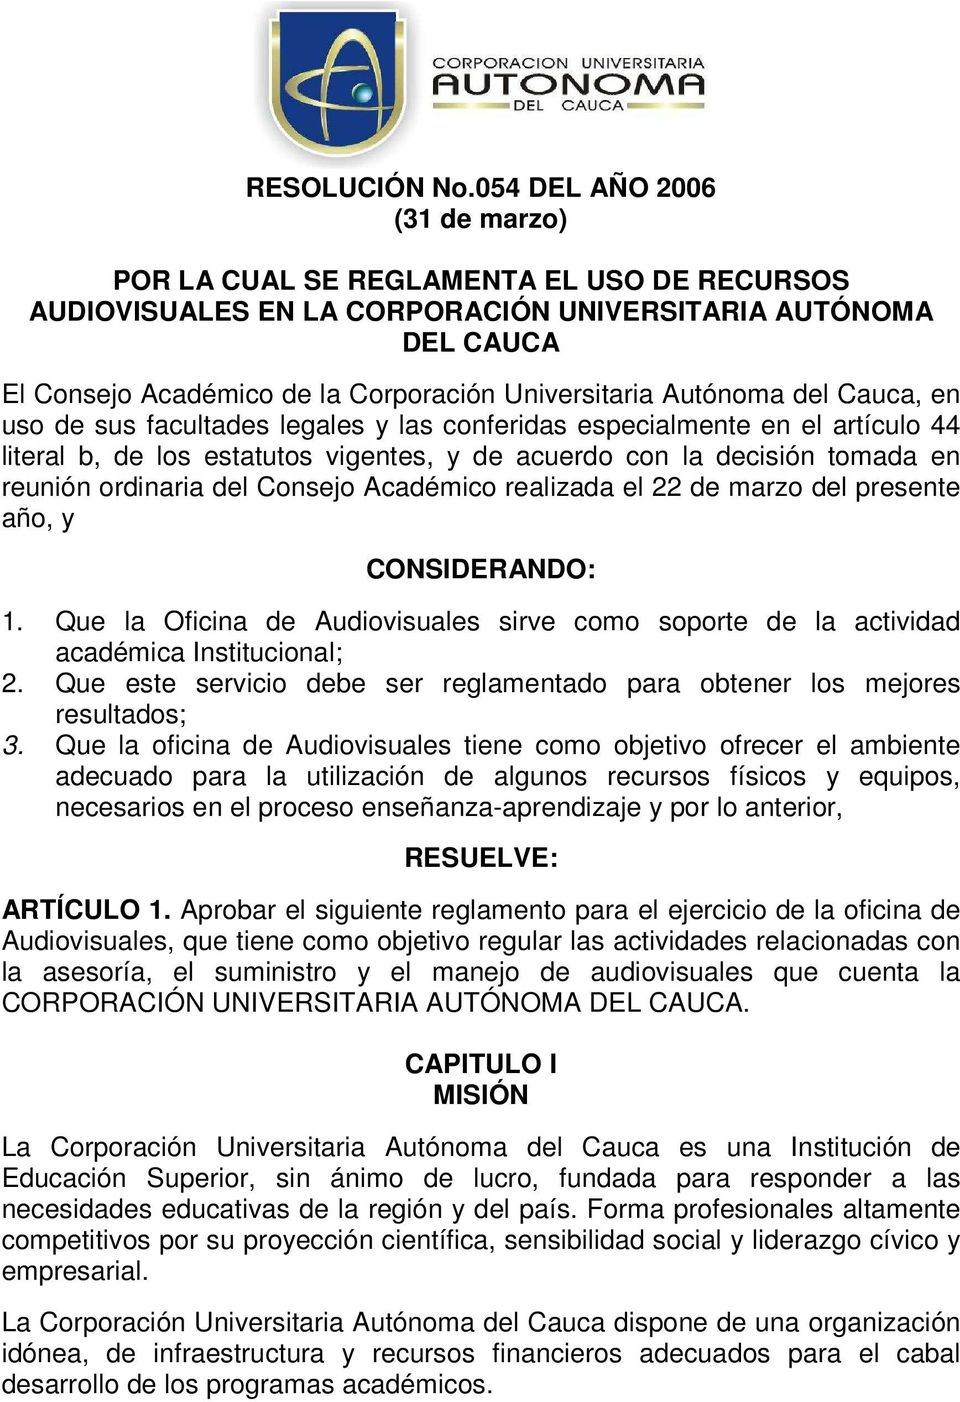 Autónoma del Cauca, en uso de sus facultades legales y las conferidas especialmente en el artículo 44 literal b, de los estatutos vigentes, y de acuerdo con la decisión tomada en reunión ordinaria